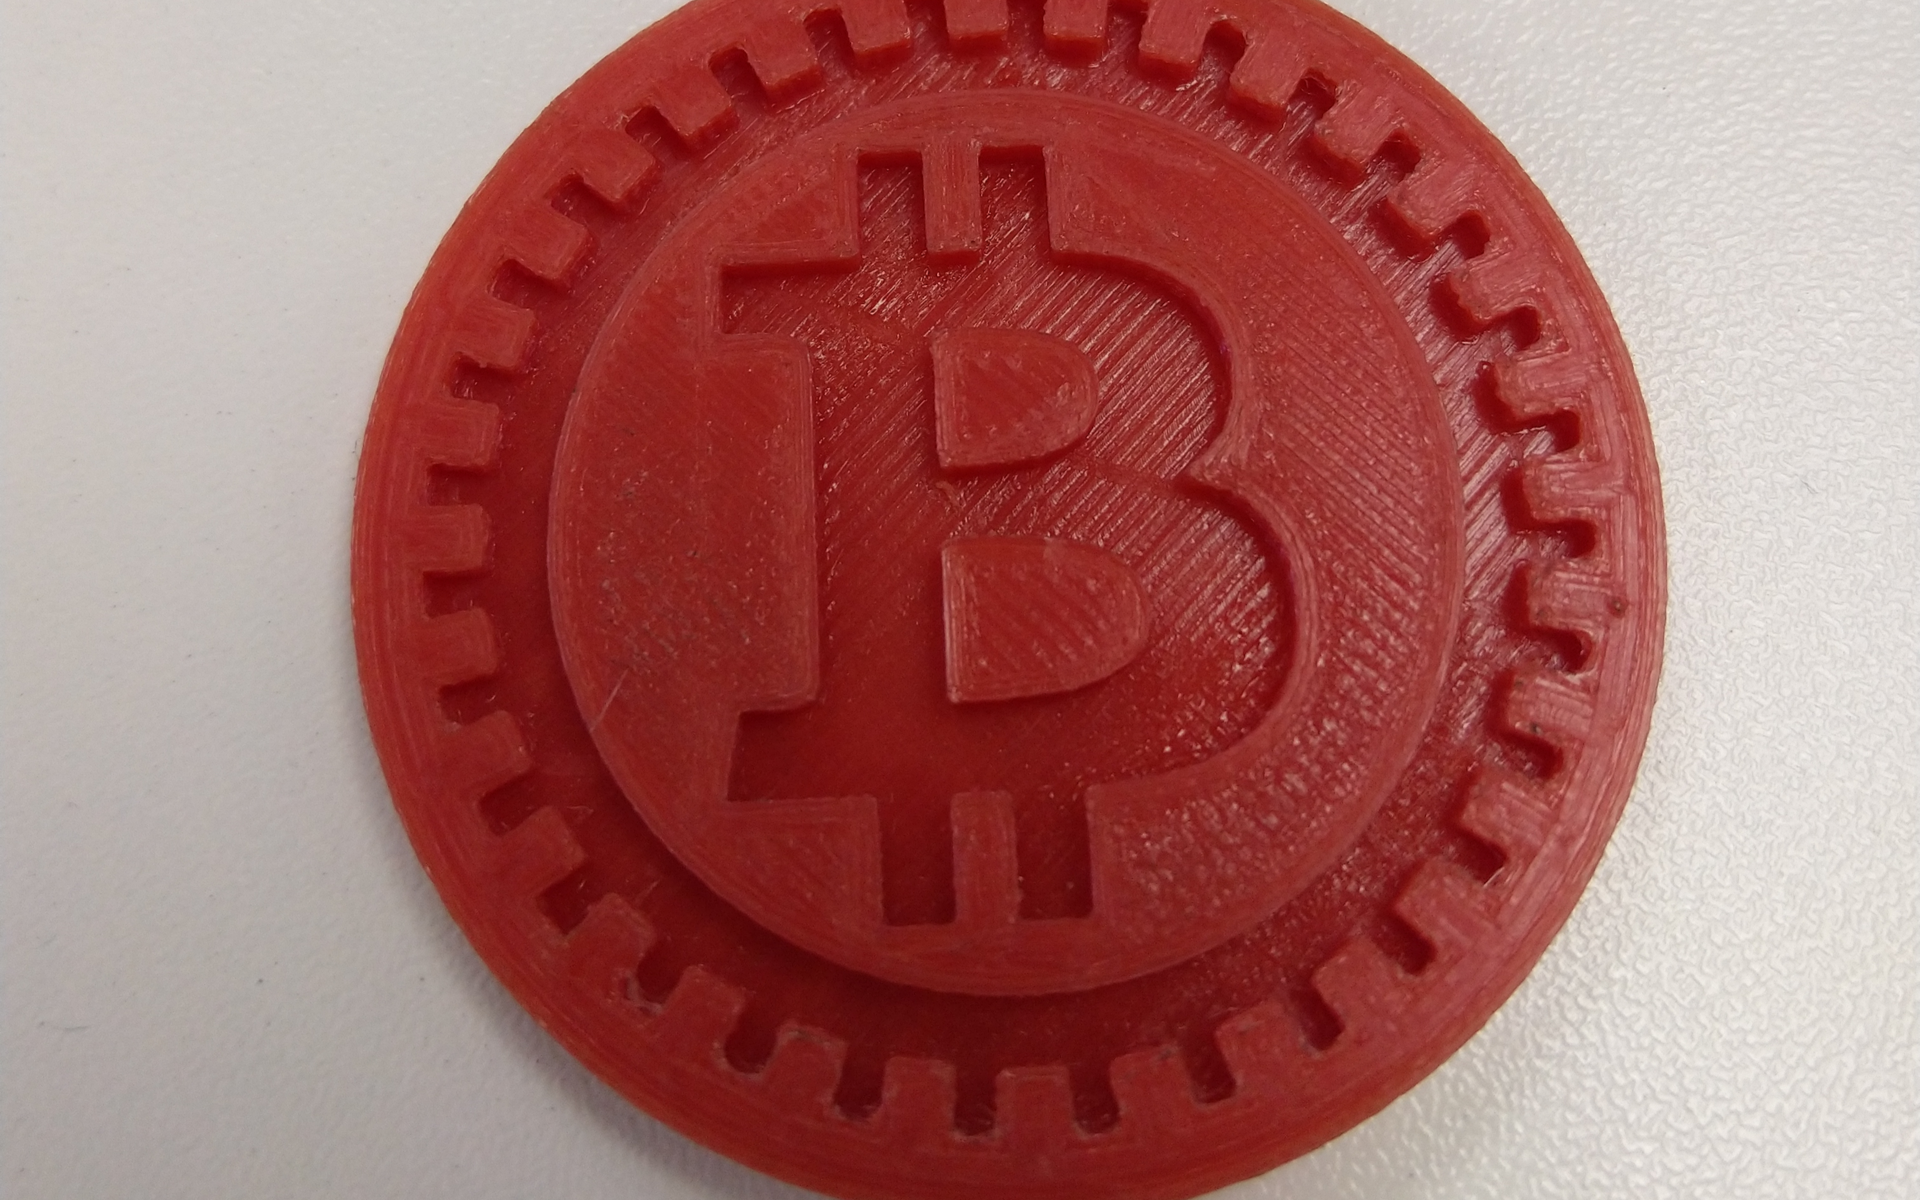 btc2 coinmarketcap)